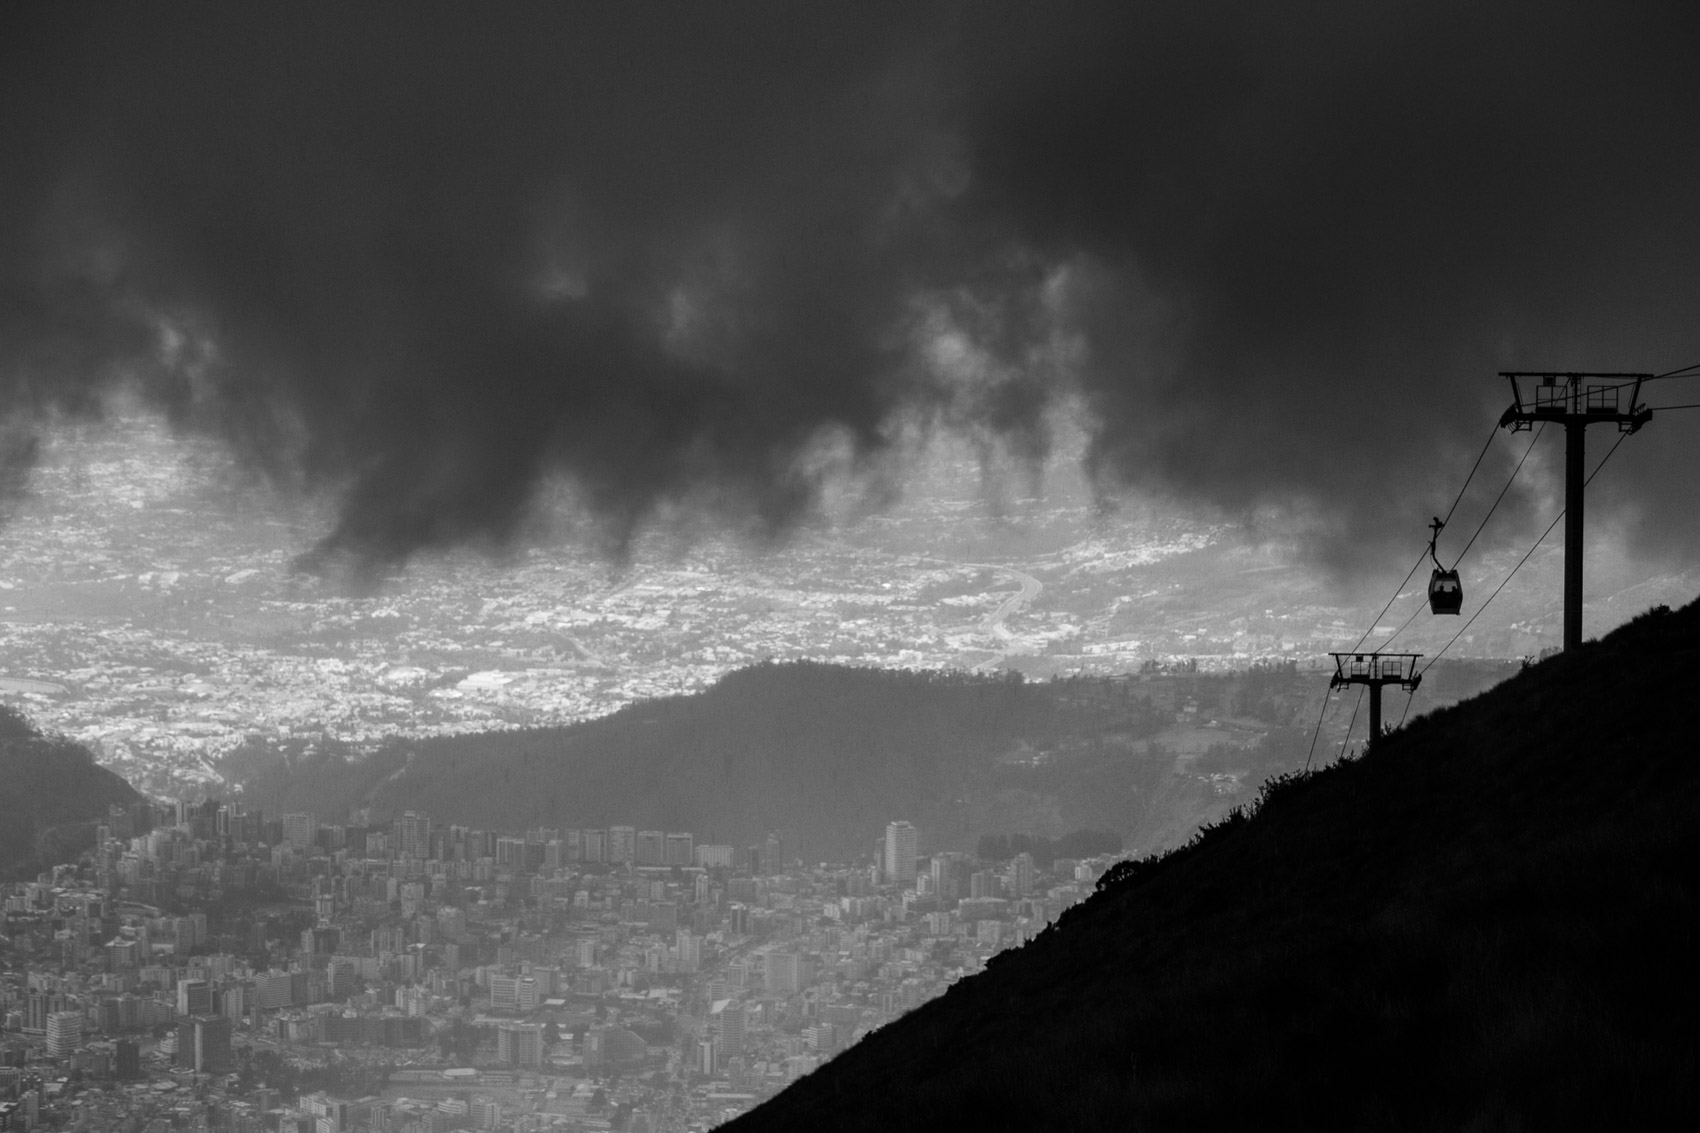  Quito, 2019
 